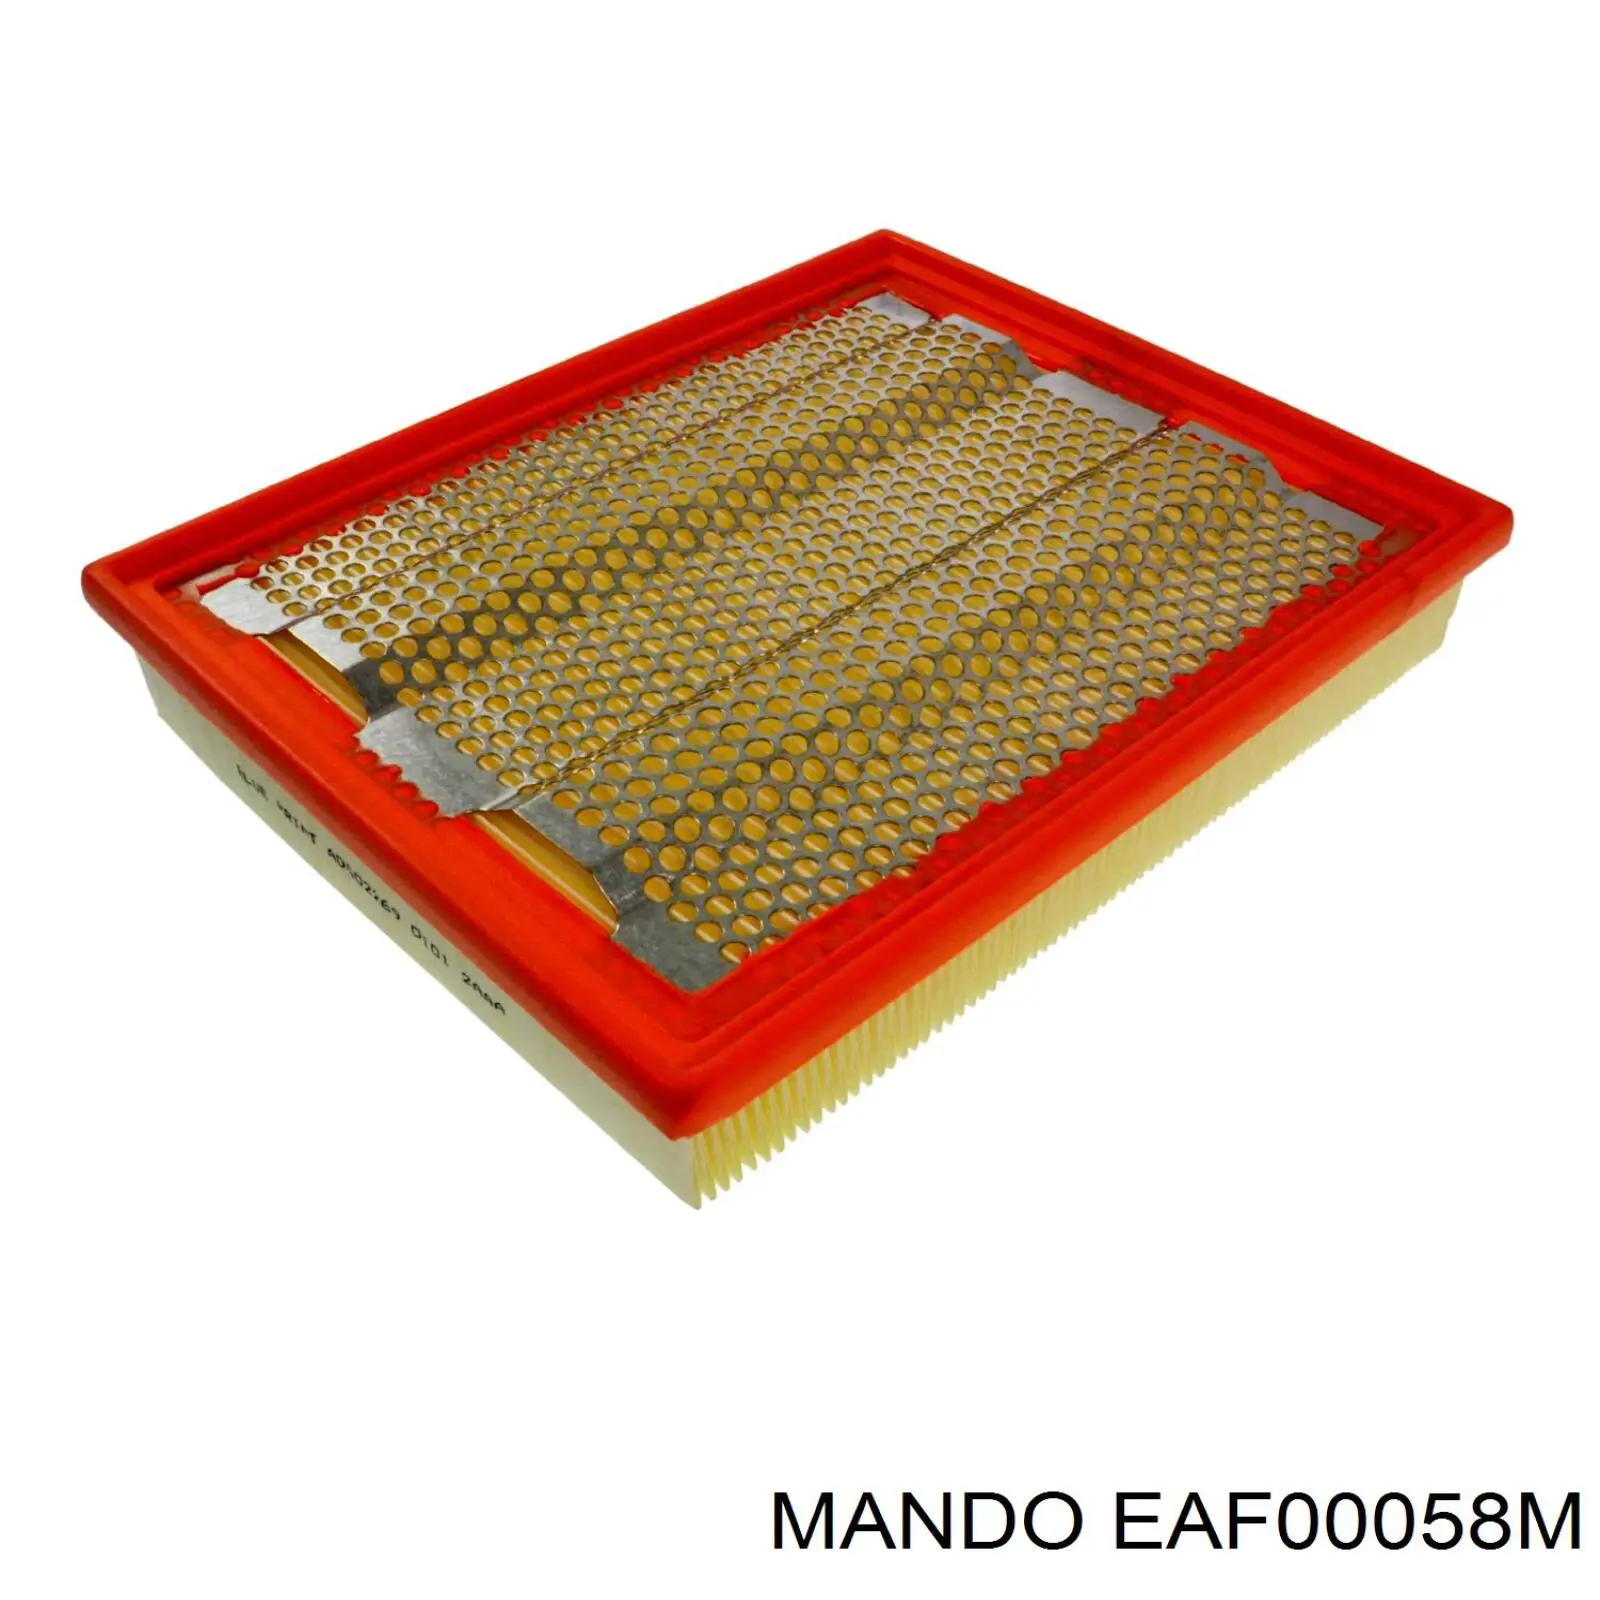 EAF00058M Mando воздушный фильтр